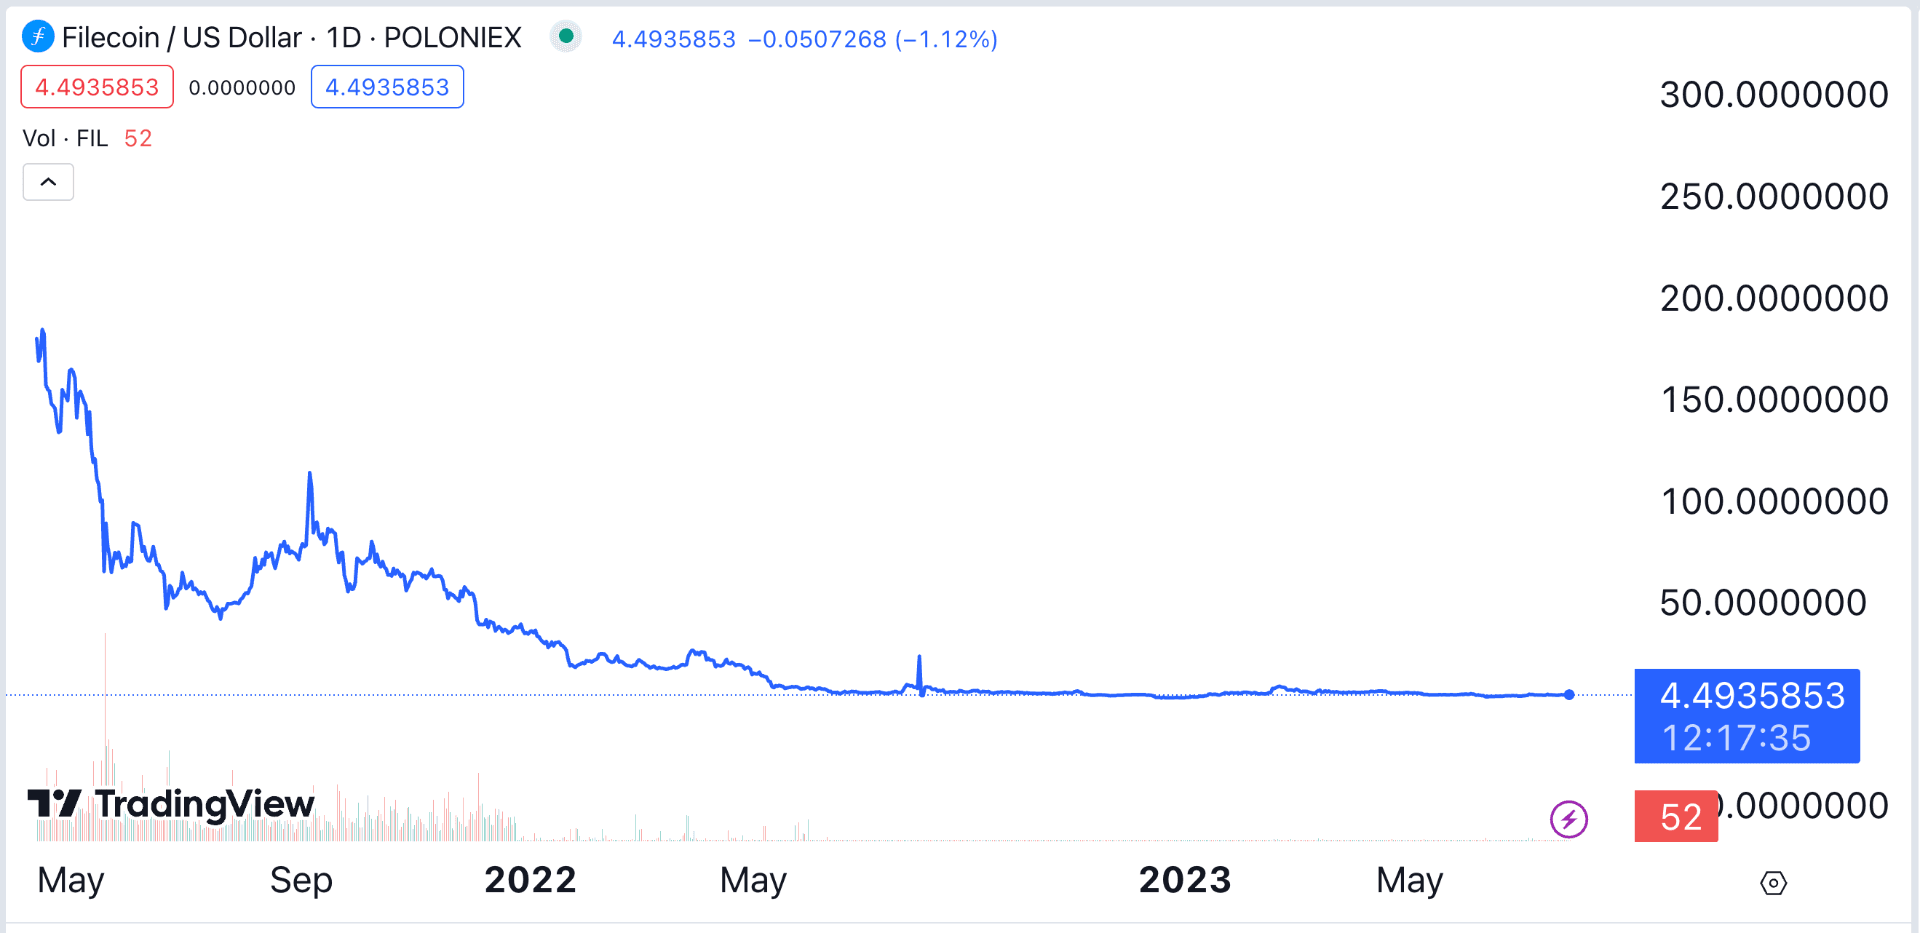 gía fil token giảm liên tục